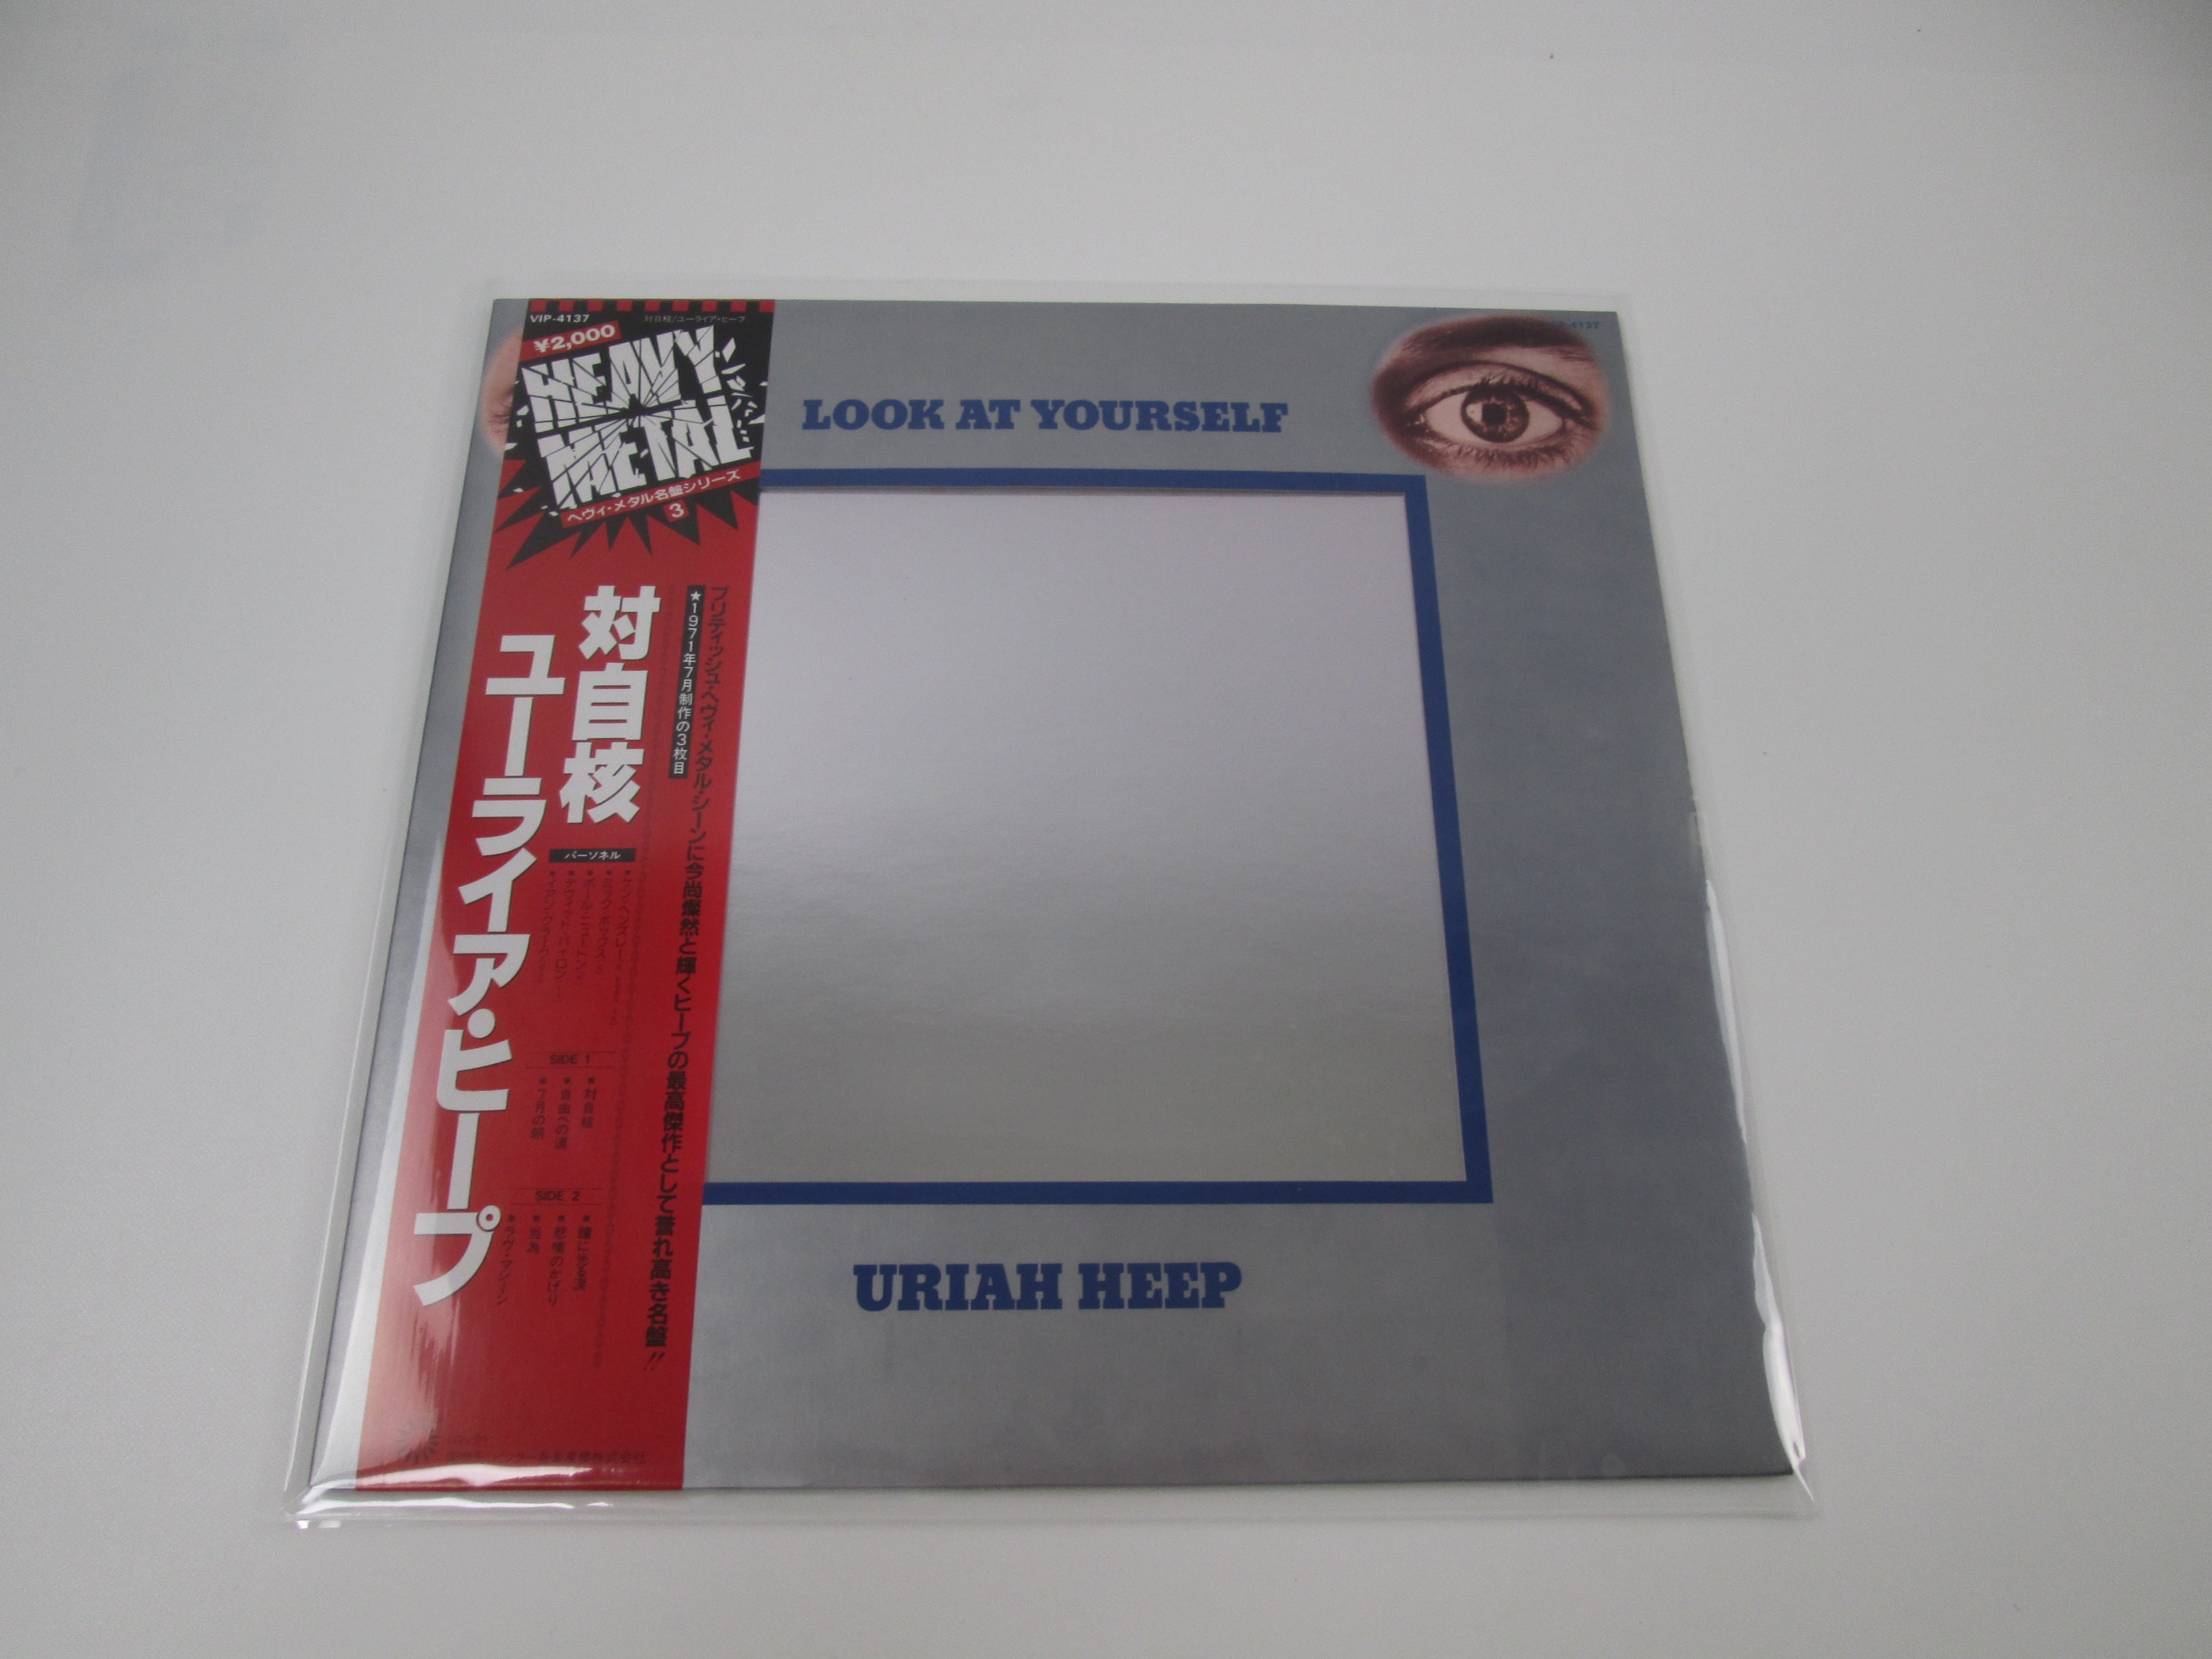 URIAH HEEP LOOK AT YOURSELF BRONZE VIP-4137 with OBI LP Vinyl